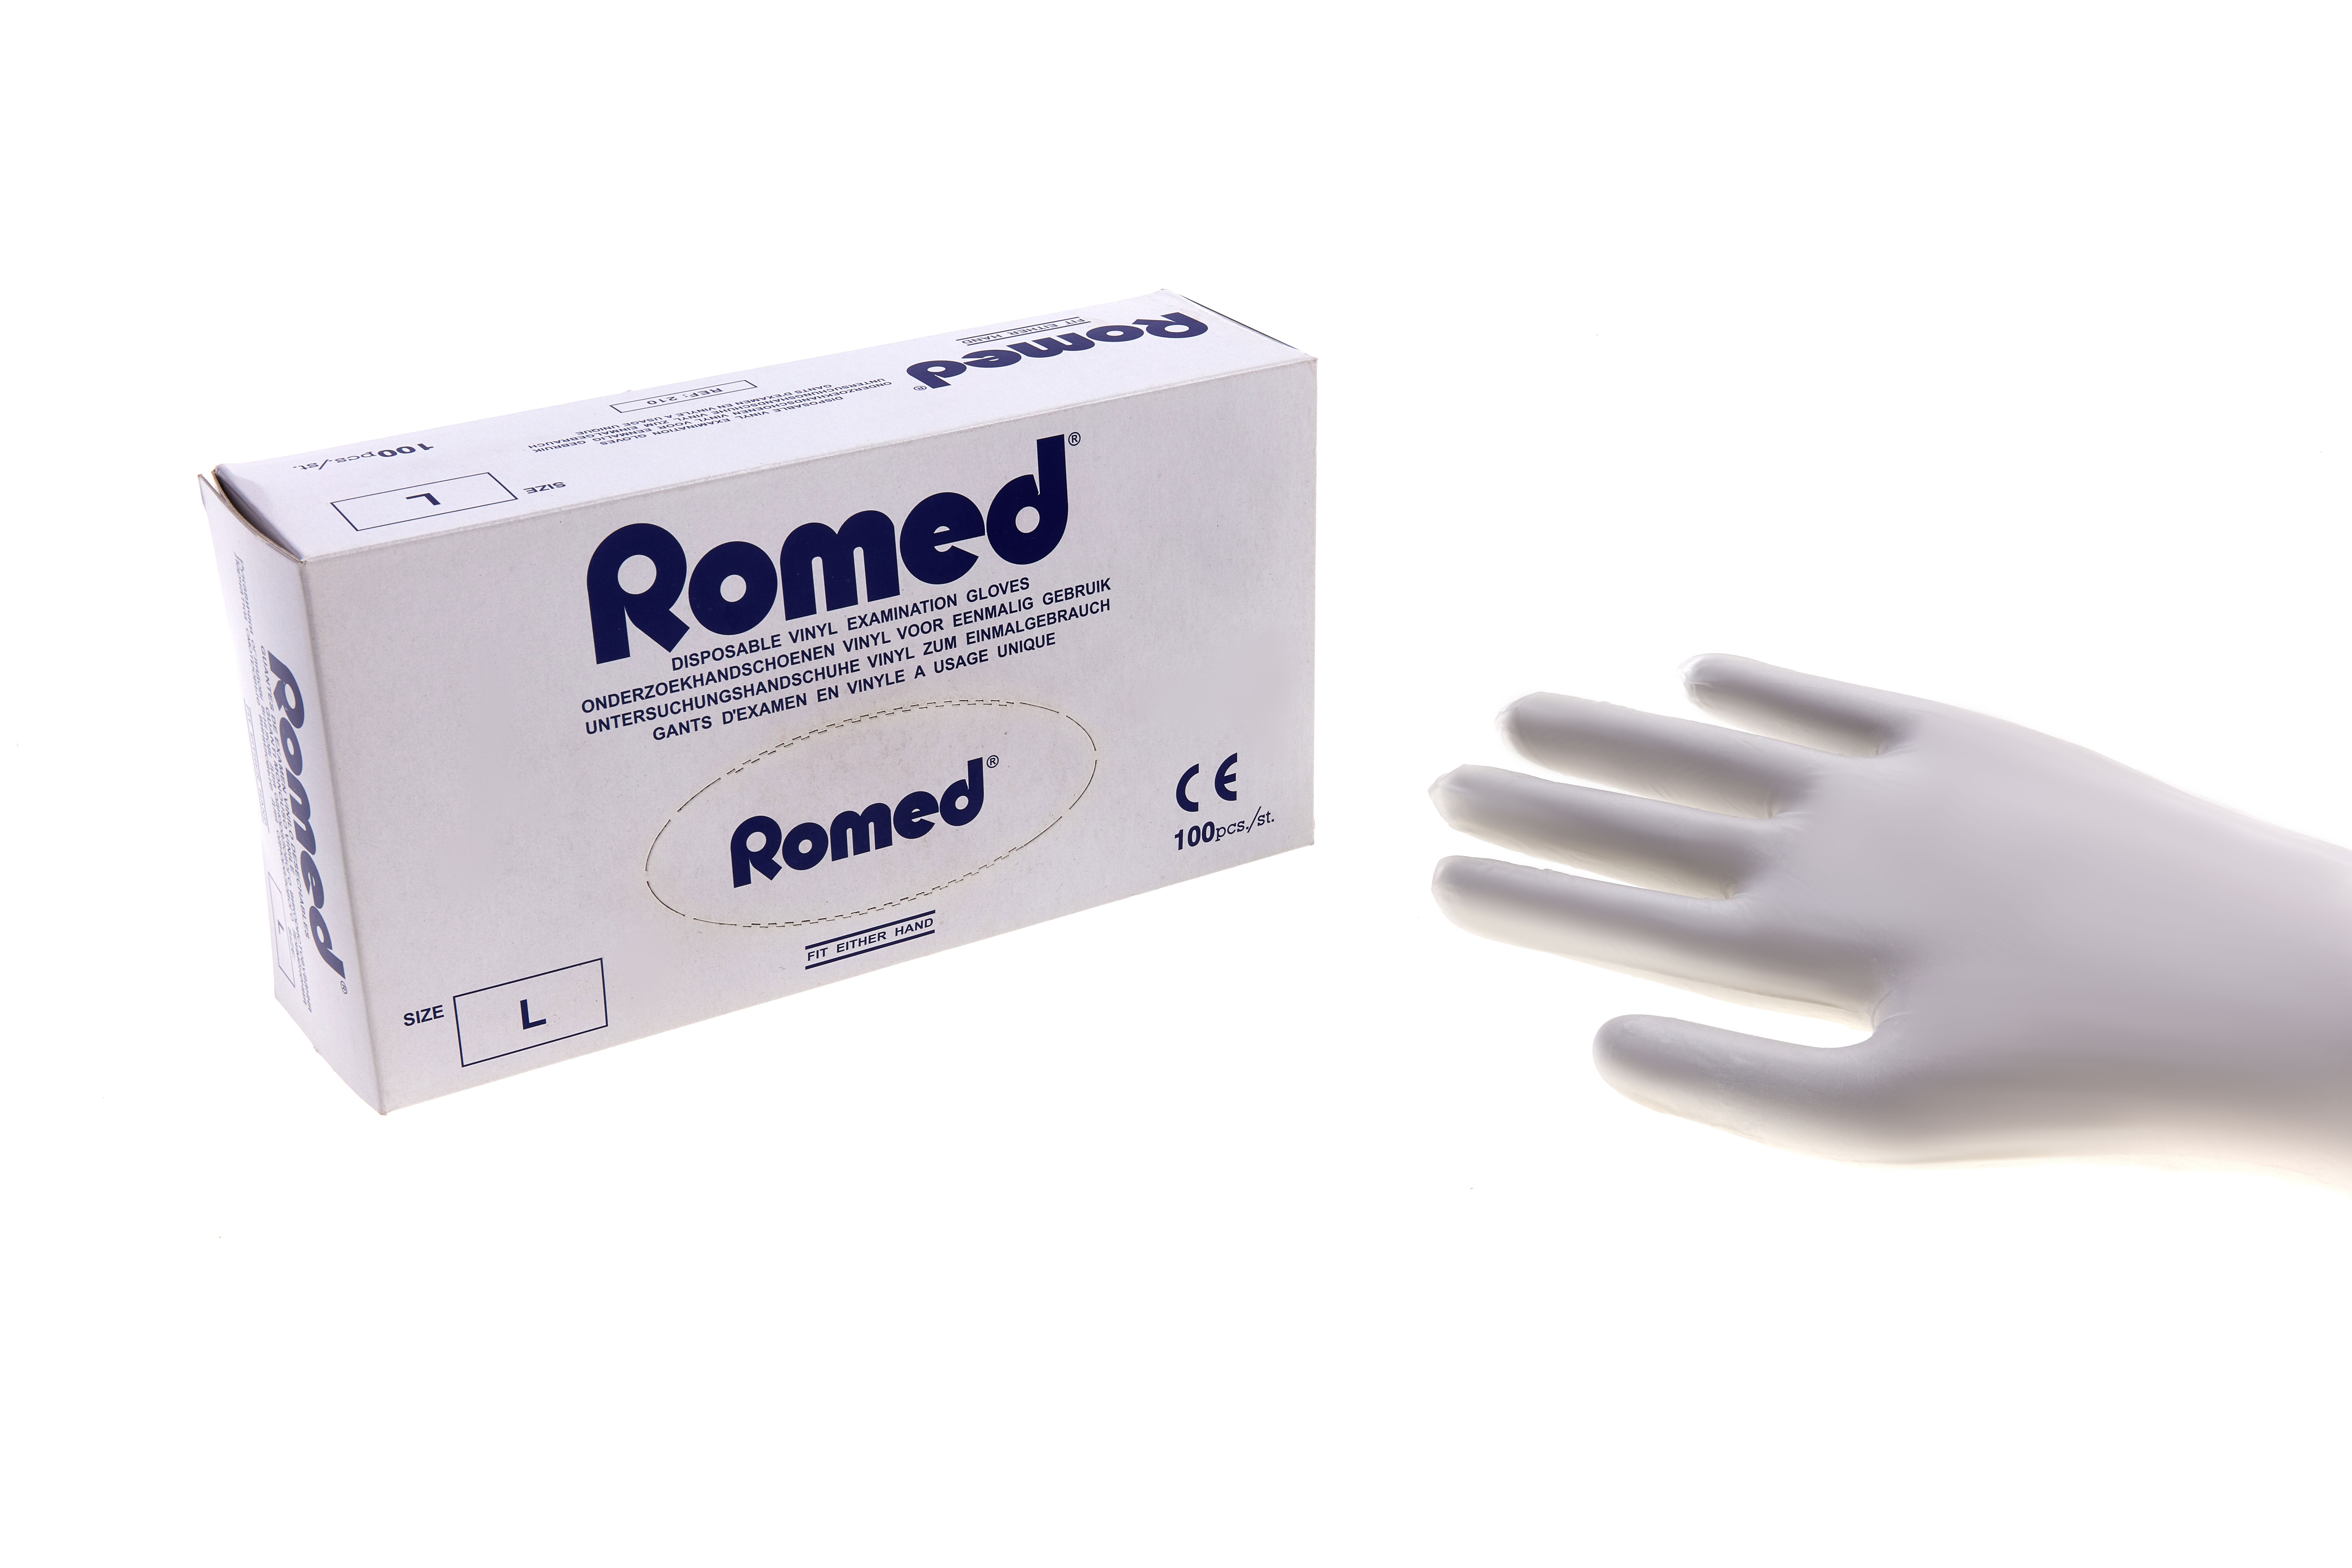 200 Romed Gants d'examen Romed en vinyle, non stériles, prépoudrés, small, 100 unités par boîte distributrice, 10 x 100 = 1 000 unités par carton.